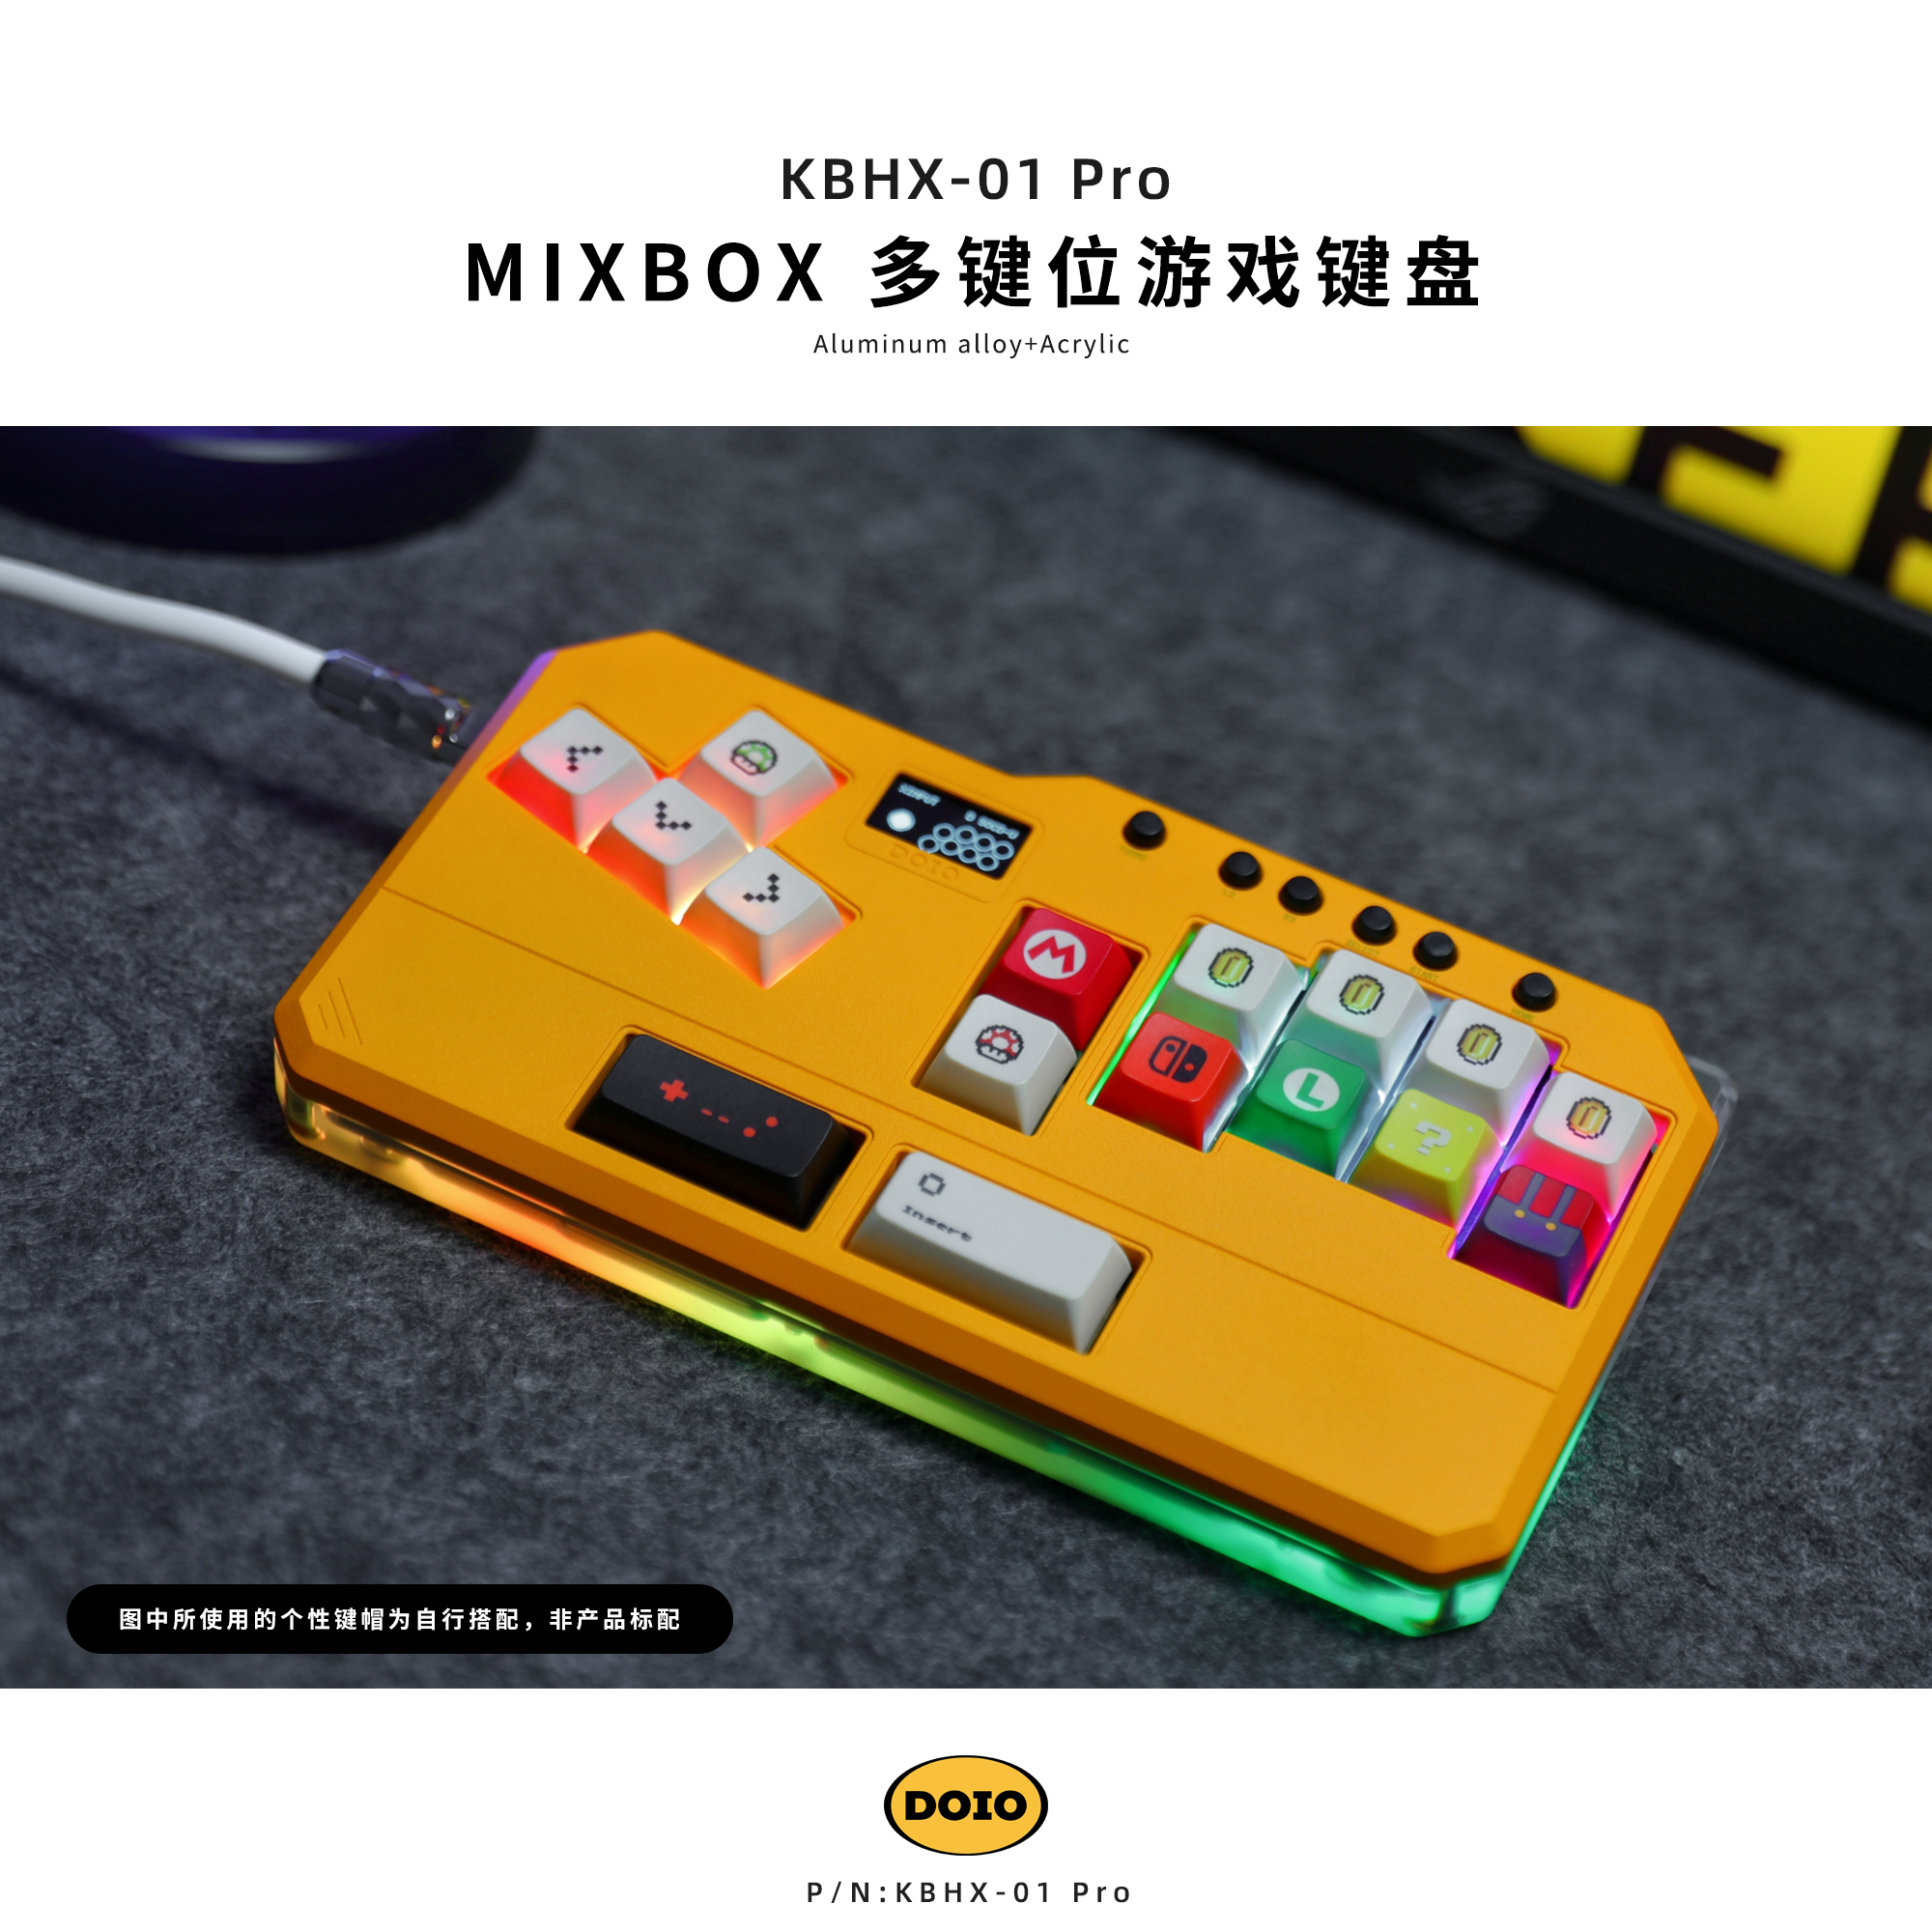 MIXBOX 游戏键盘街机格斗